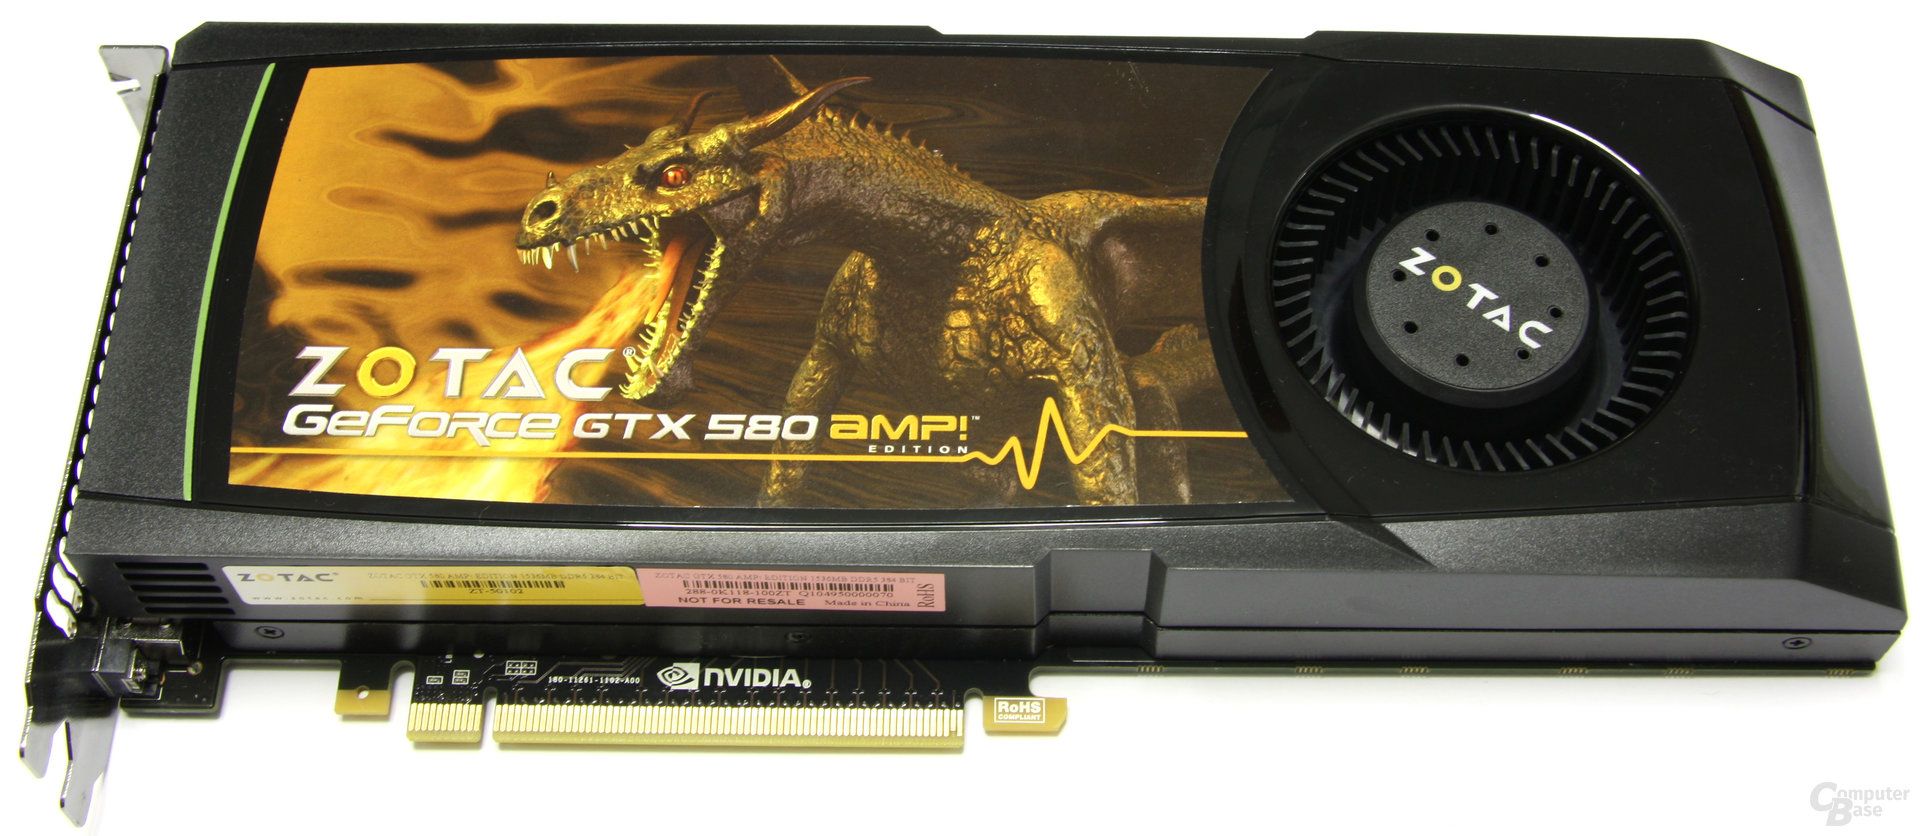 Zotac GeForce GTX 580 AMP!